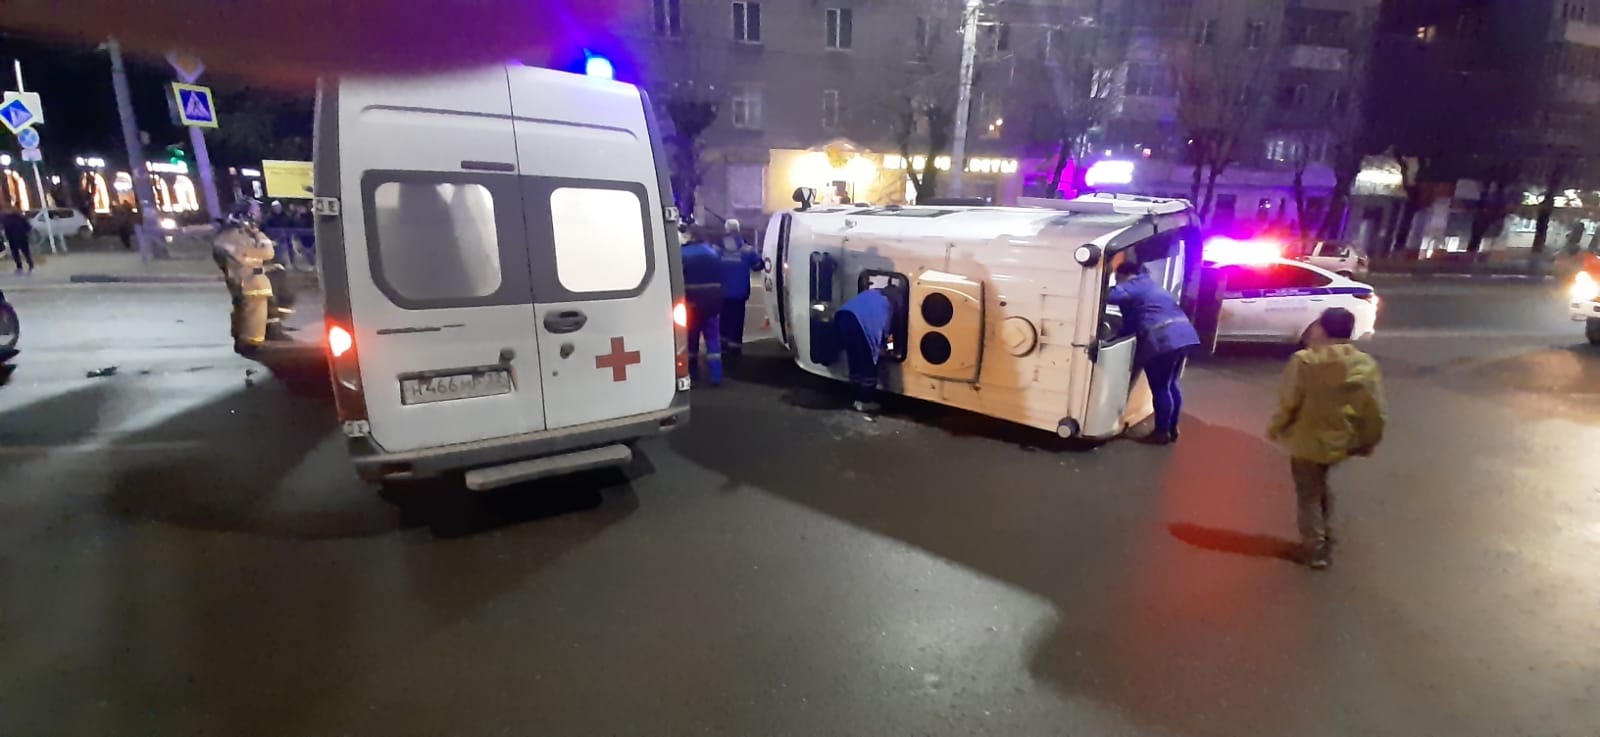 Возле ТЦ «Бум-Сити» в Брянске перевернулась карета скорой помощи